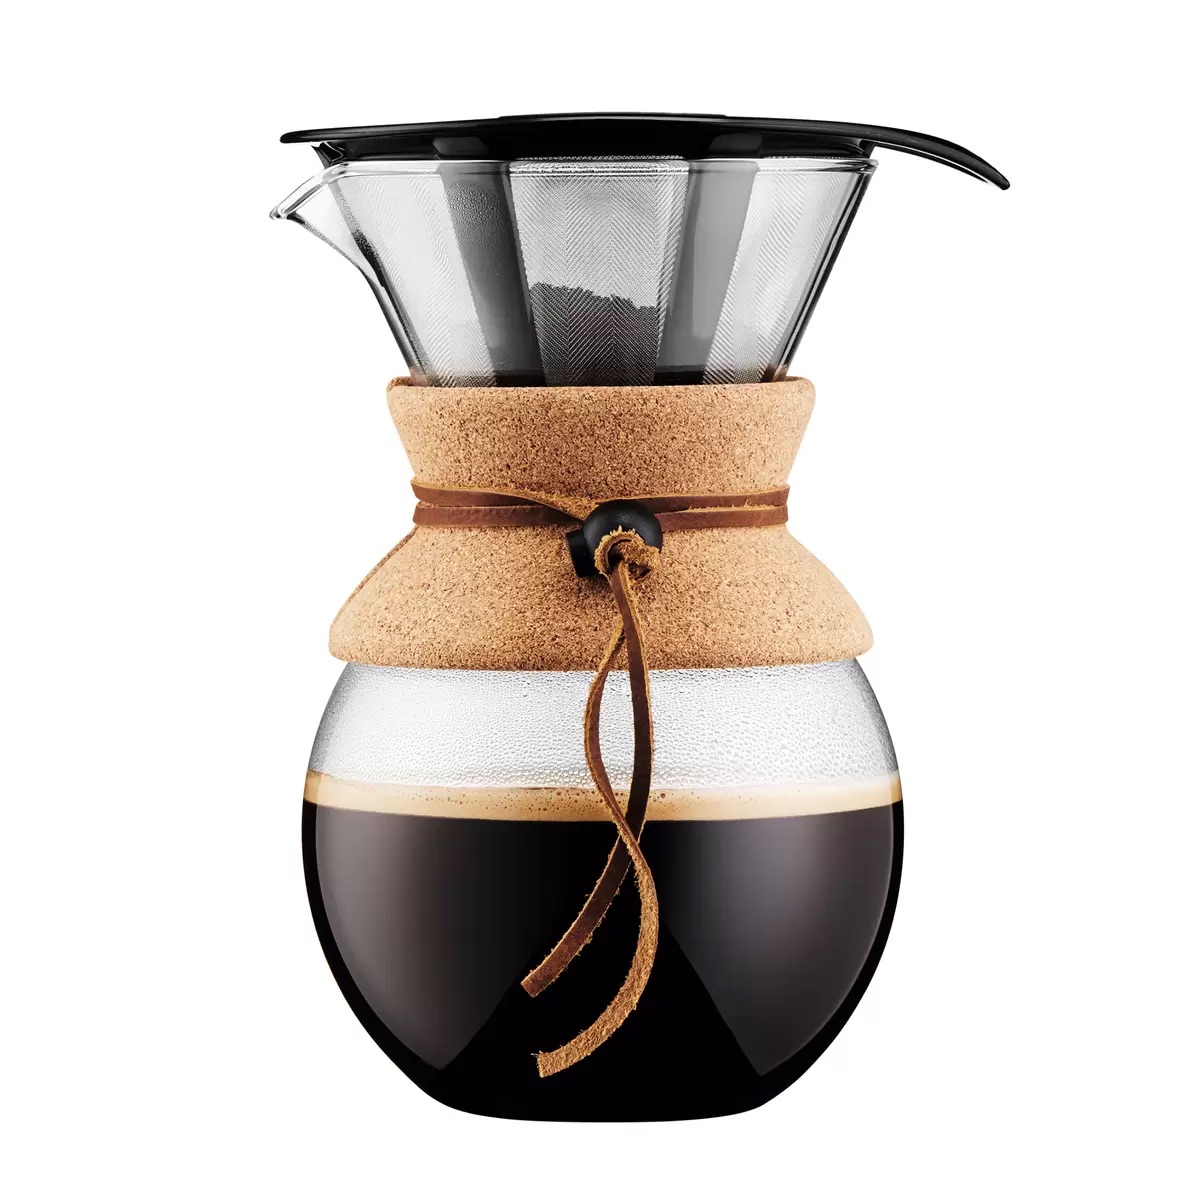 ボダム プアオーバー ドリップ式コーヒーメーカー1.0L Bodum Pour Over Drip Coffee Maker 1.0L